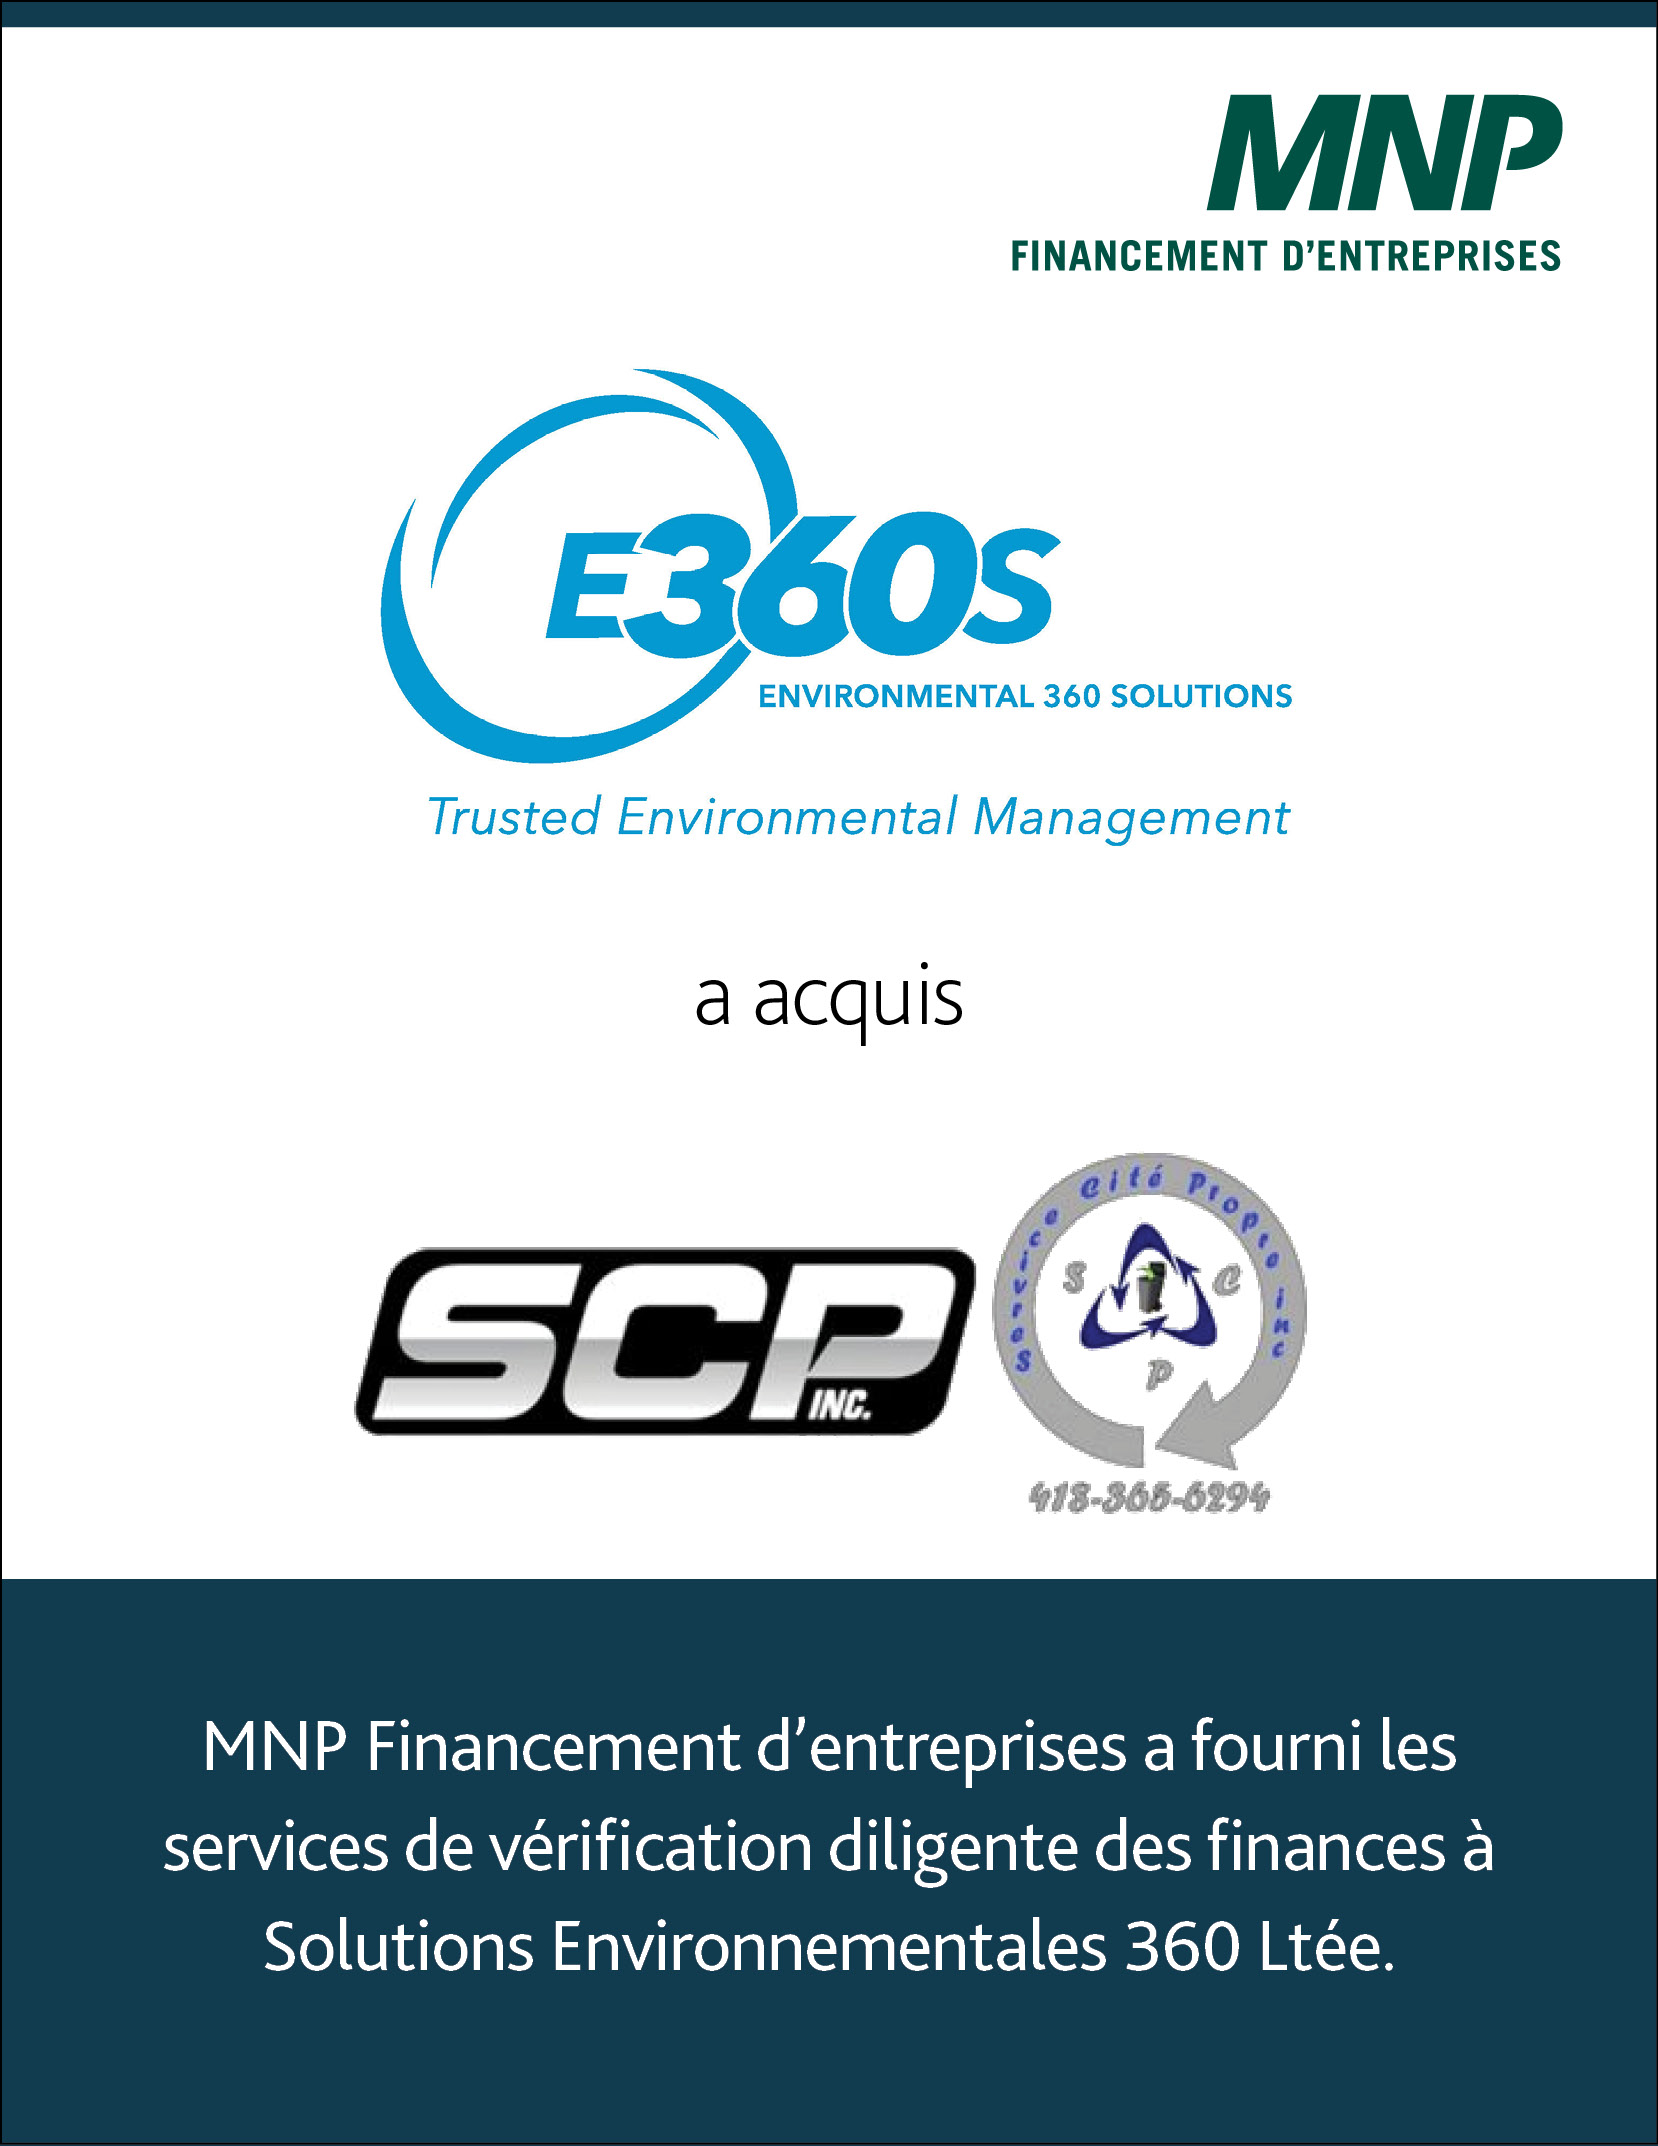 Environmental 360 Solutions Ltd SCP Inc and Service Cité Propre Inc